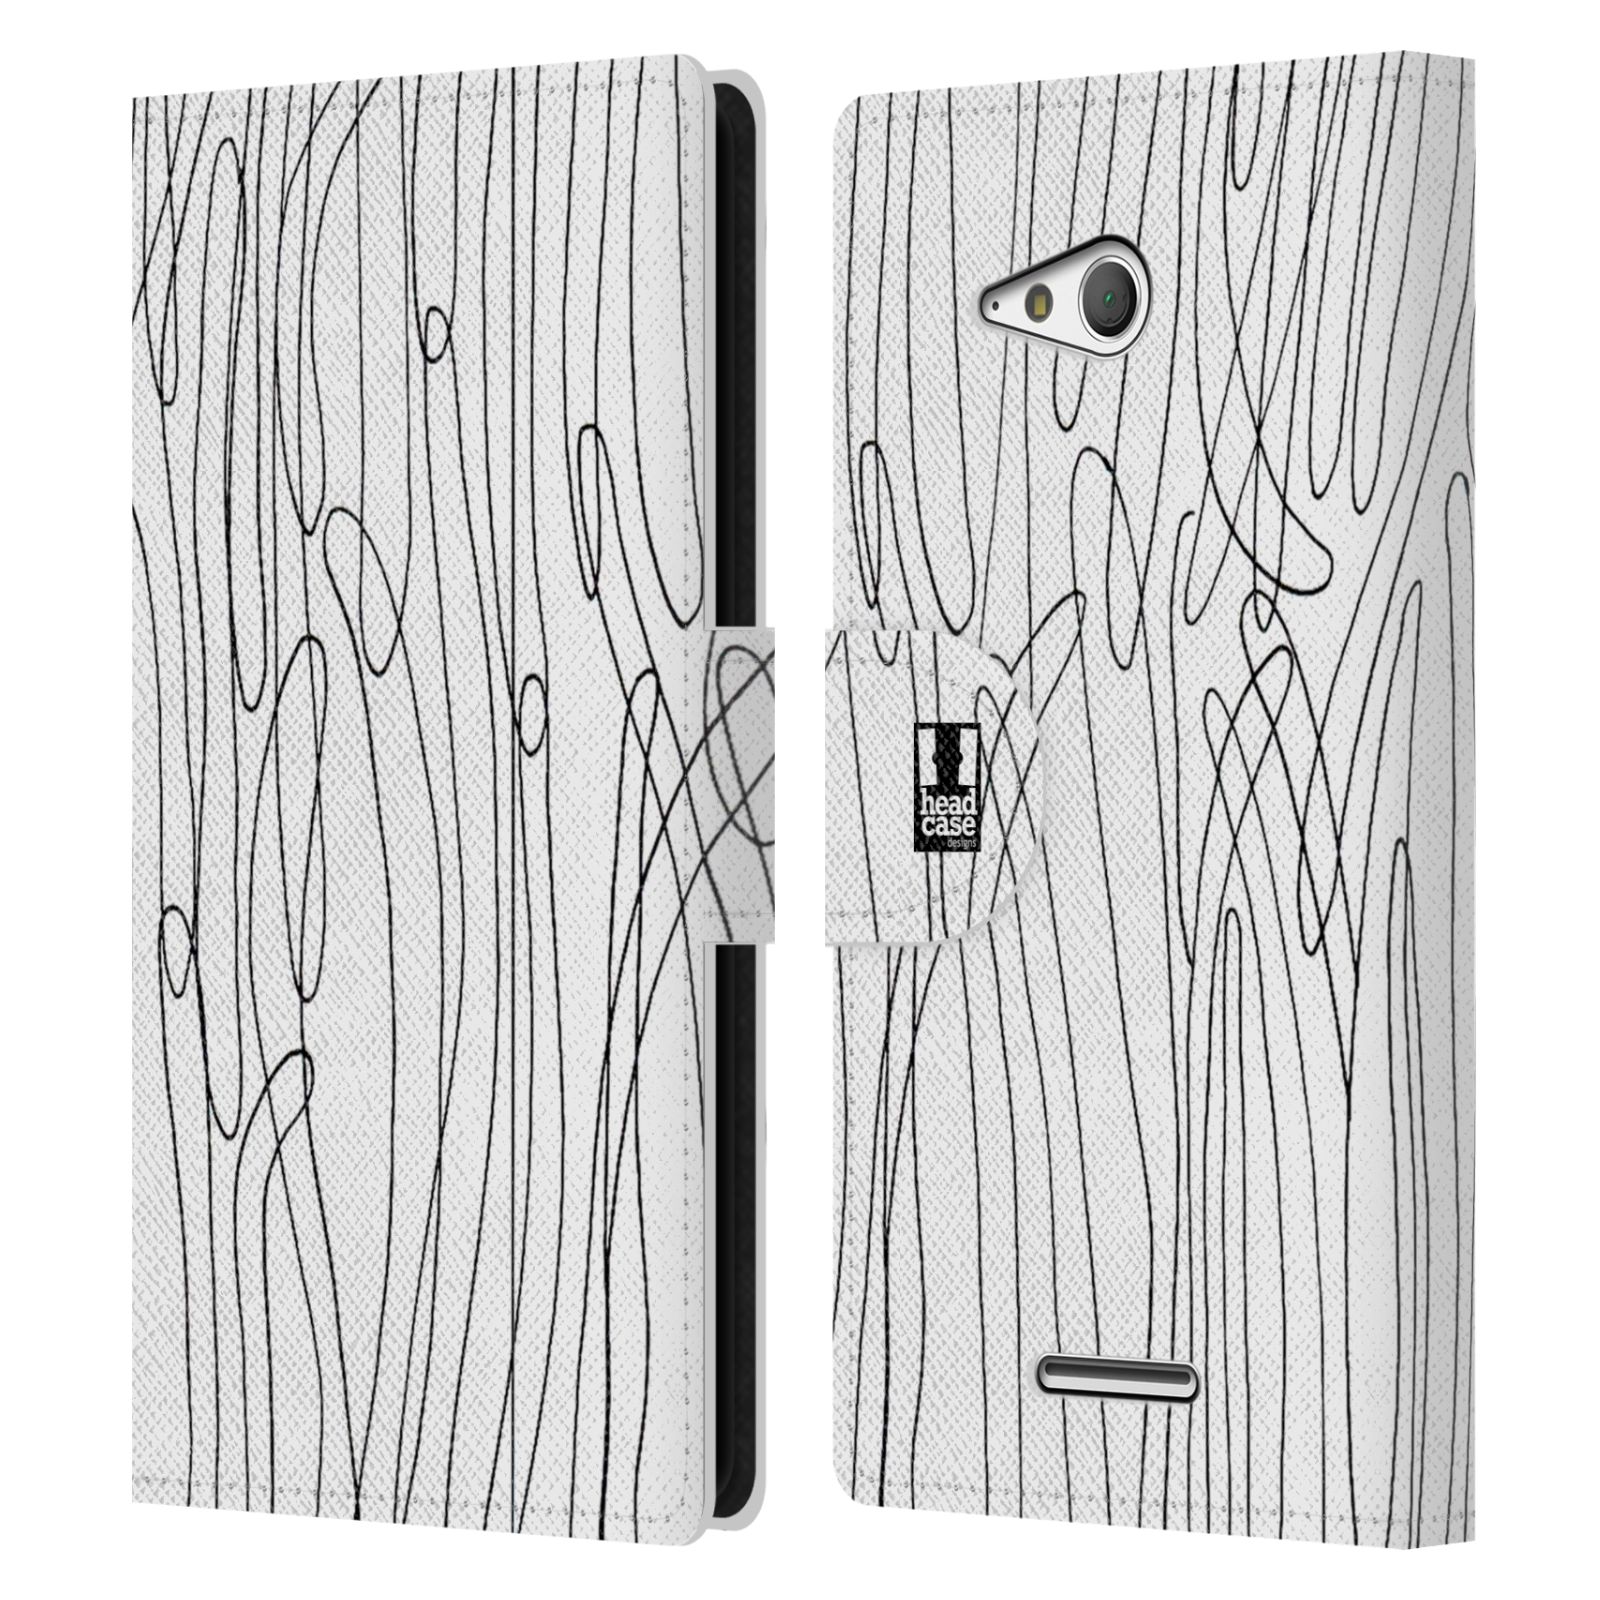 HEAD CASE Flipové pouzdro pro mobil SONY XPERIA E4g kresba a čmáranice vlny černá a bílá